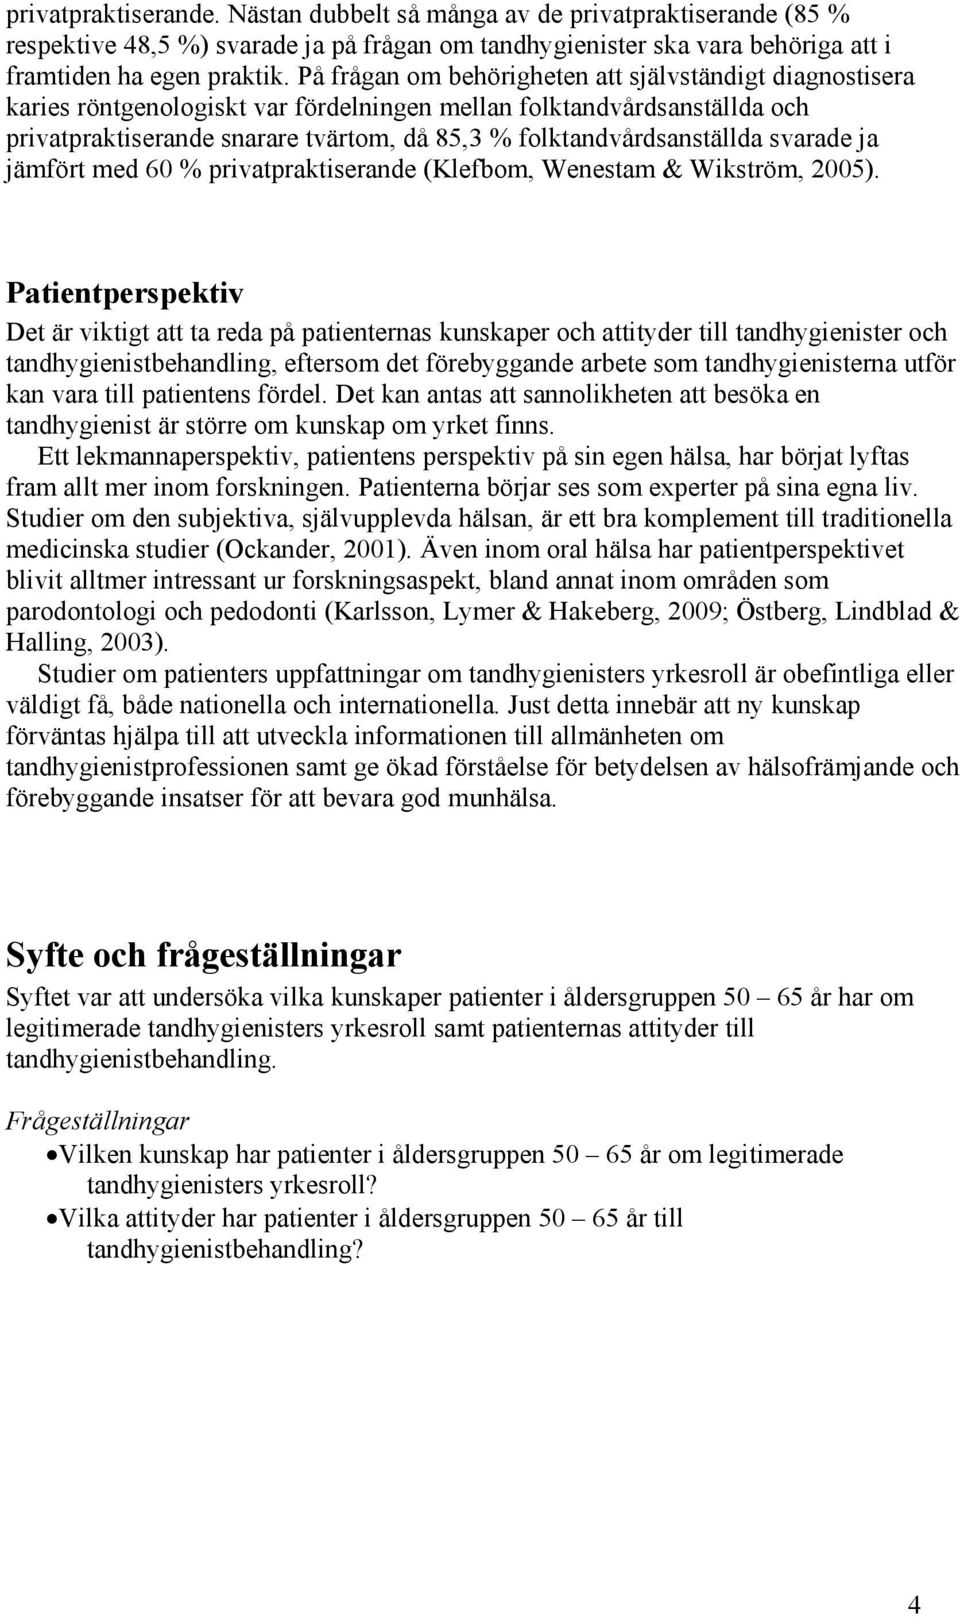 folktandvårdsanställda svarade ja jämfört med 60 % privatpraktiserande (Klefbom, Wenestam & Wikström, 2005).